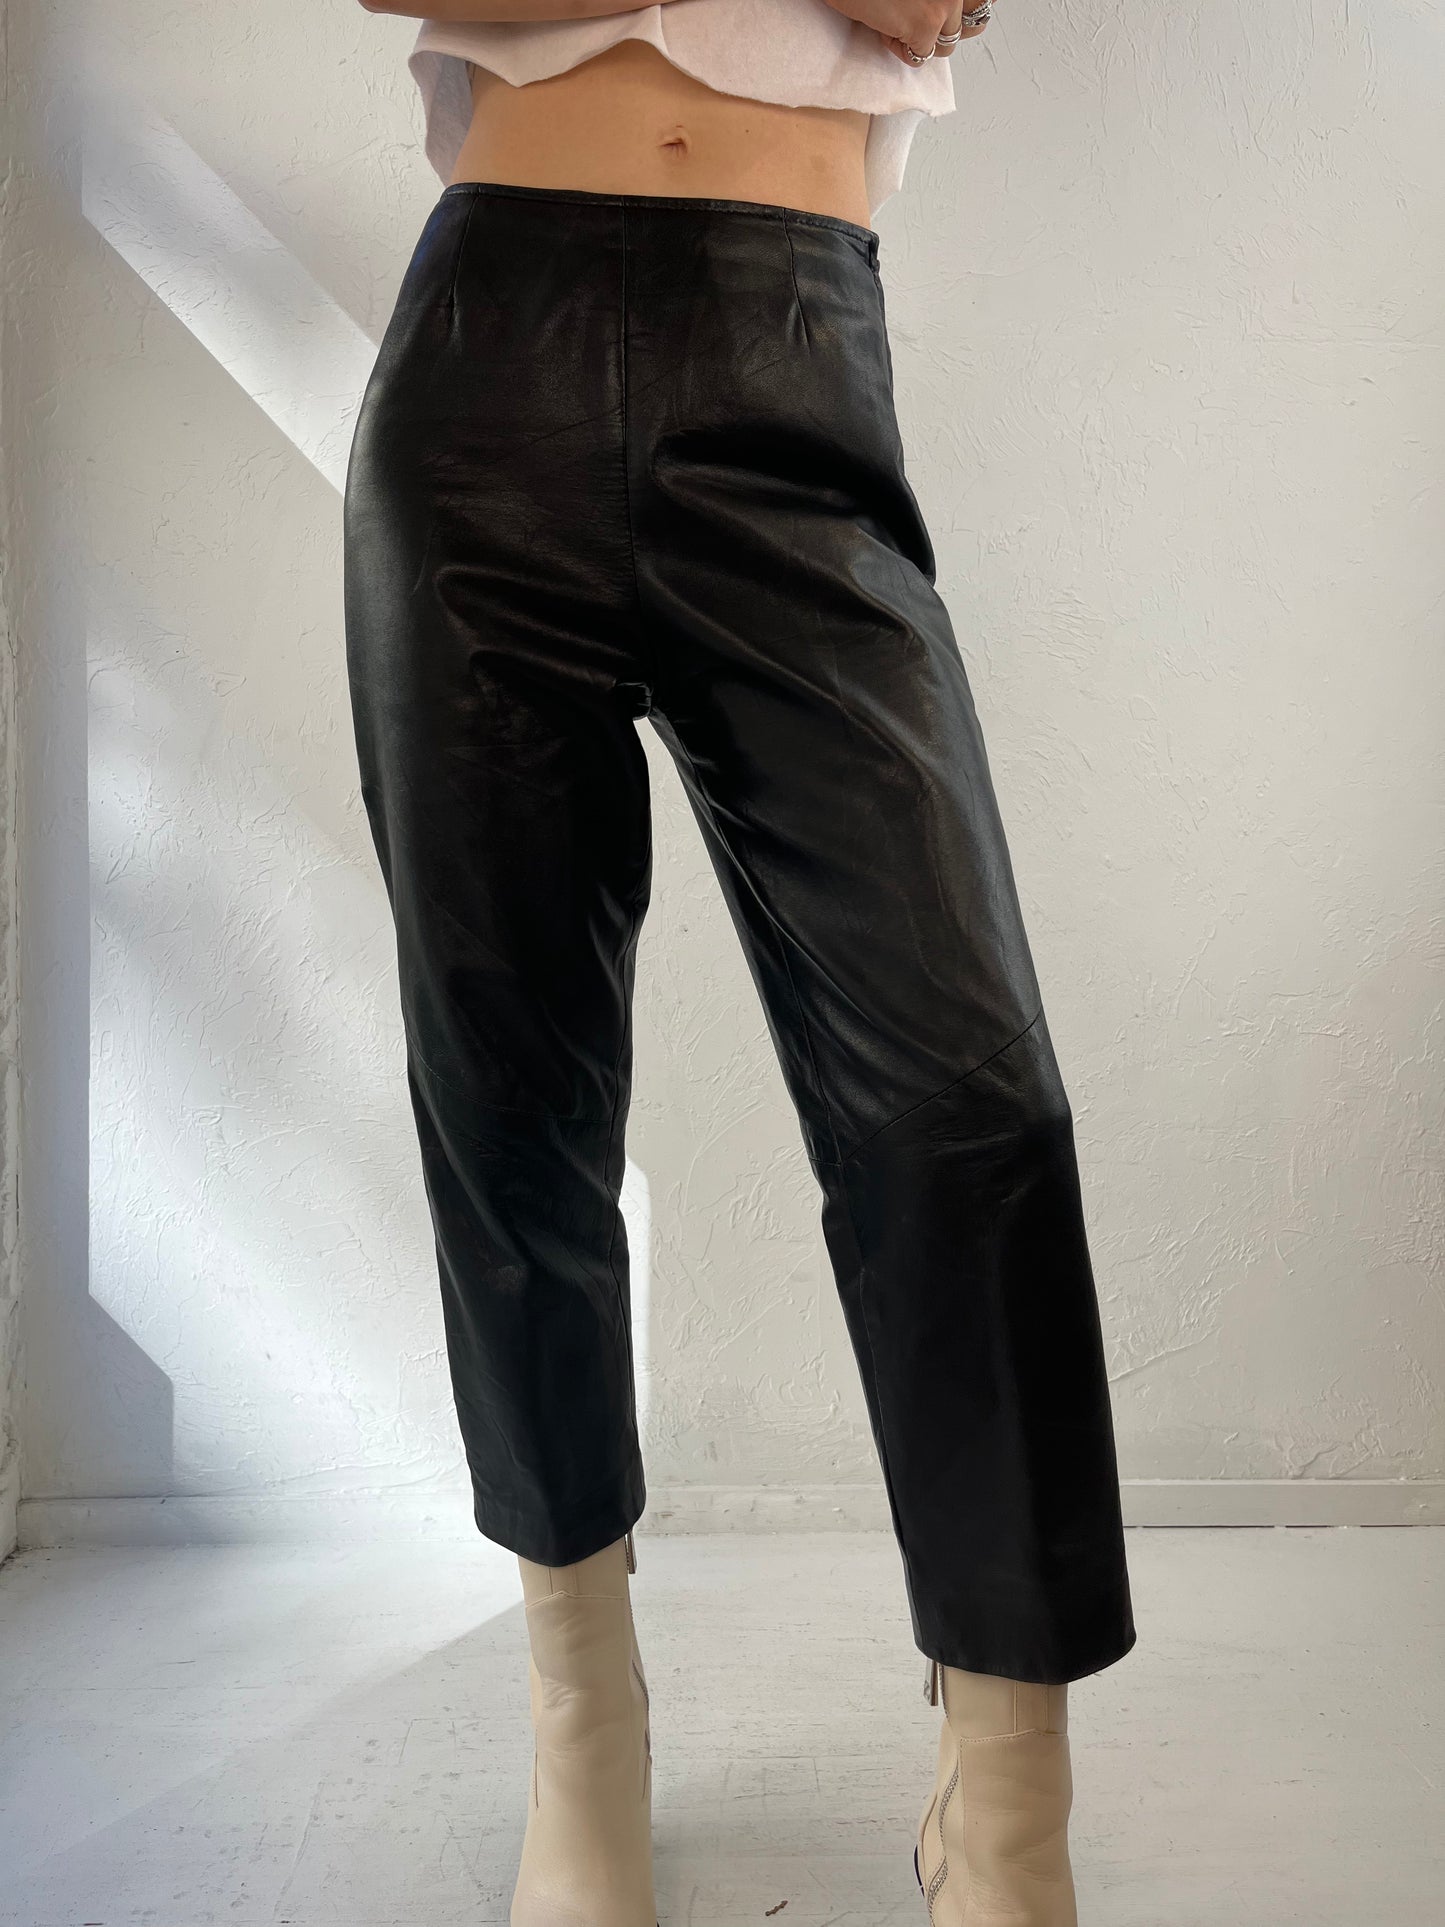 90s 'Danier' Black Leather Pants / 4